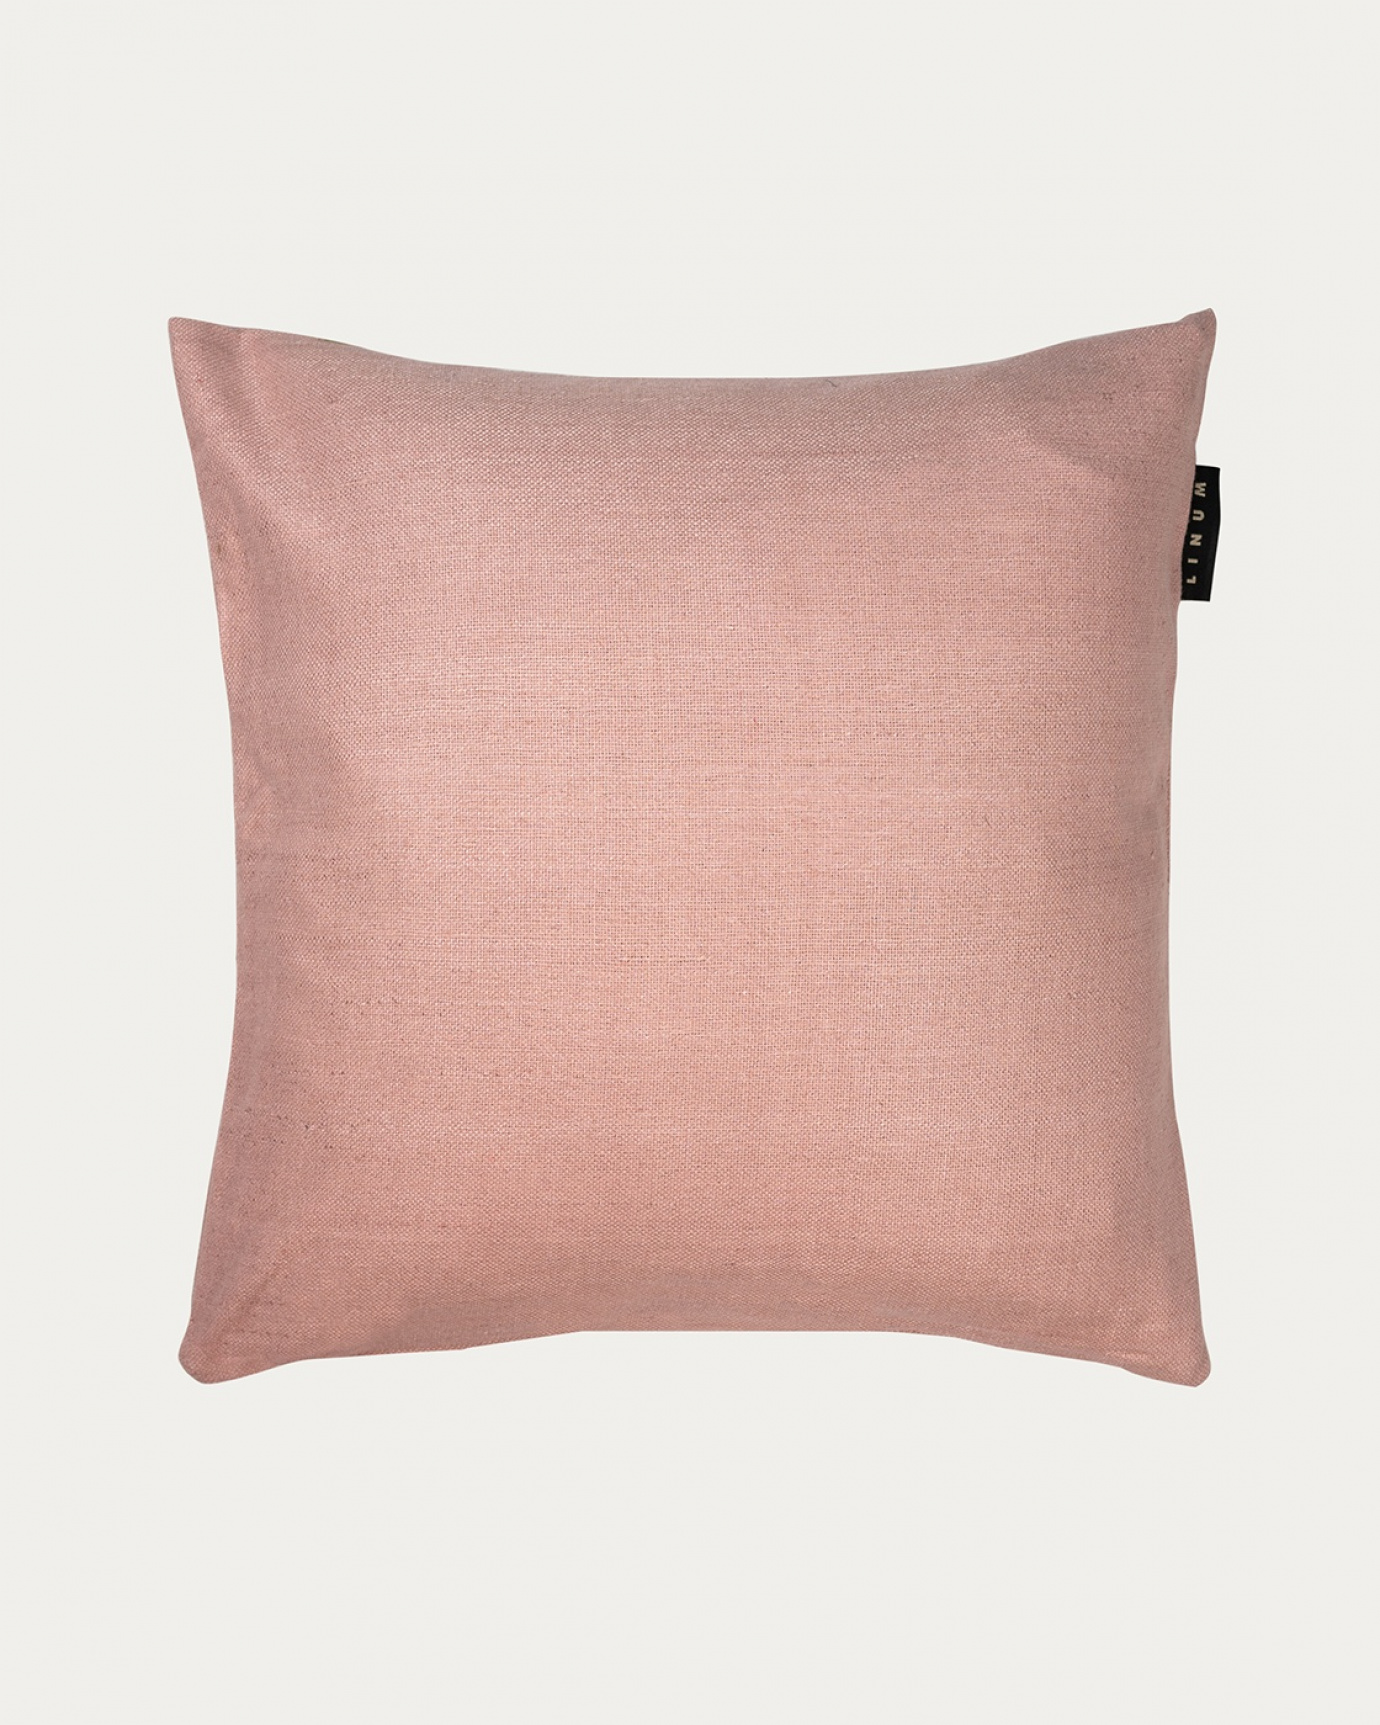 Produktbild dammig rosa SETA kuddfodral av 100% råsiden som ger ett fint lyster från LINUM DESIGN. Storlek 50x50 cm.